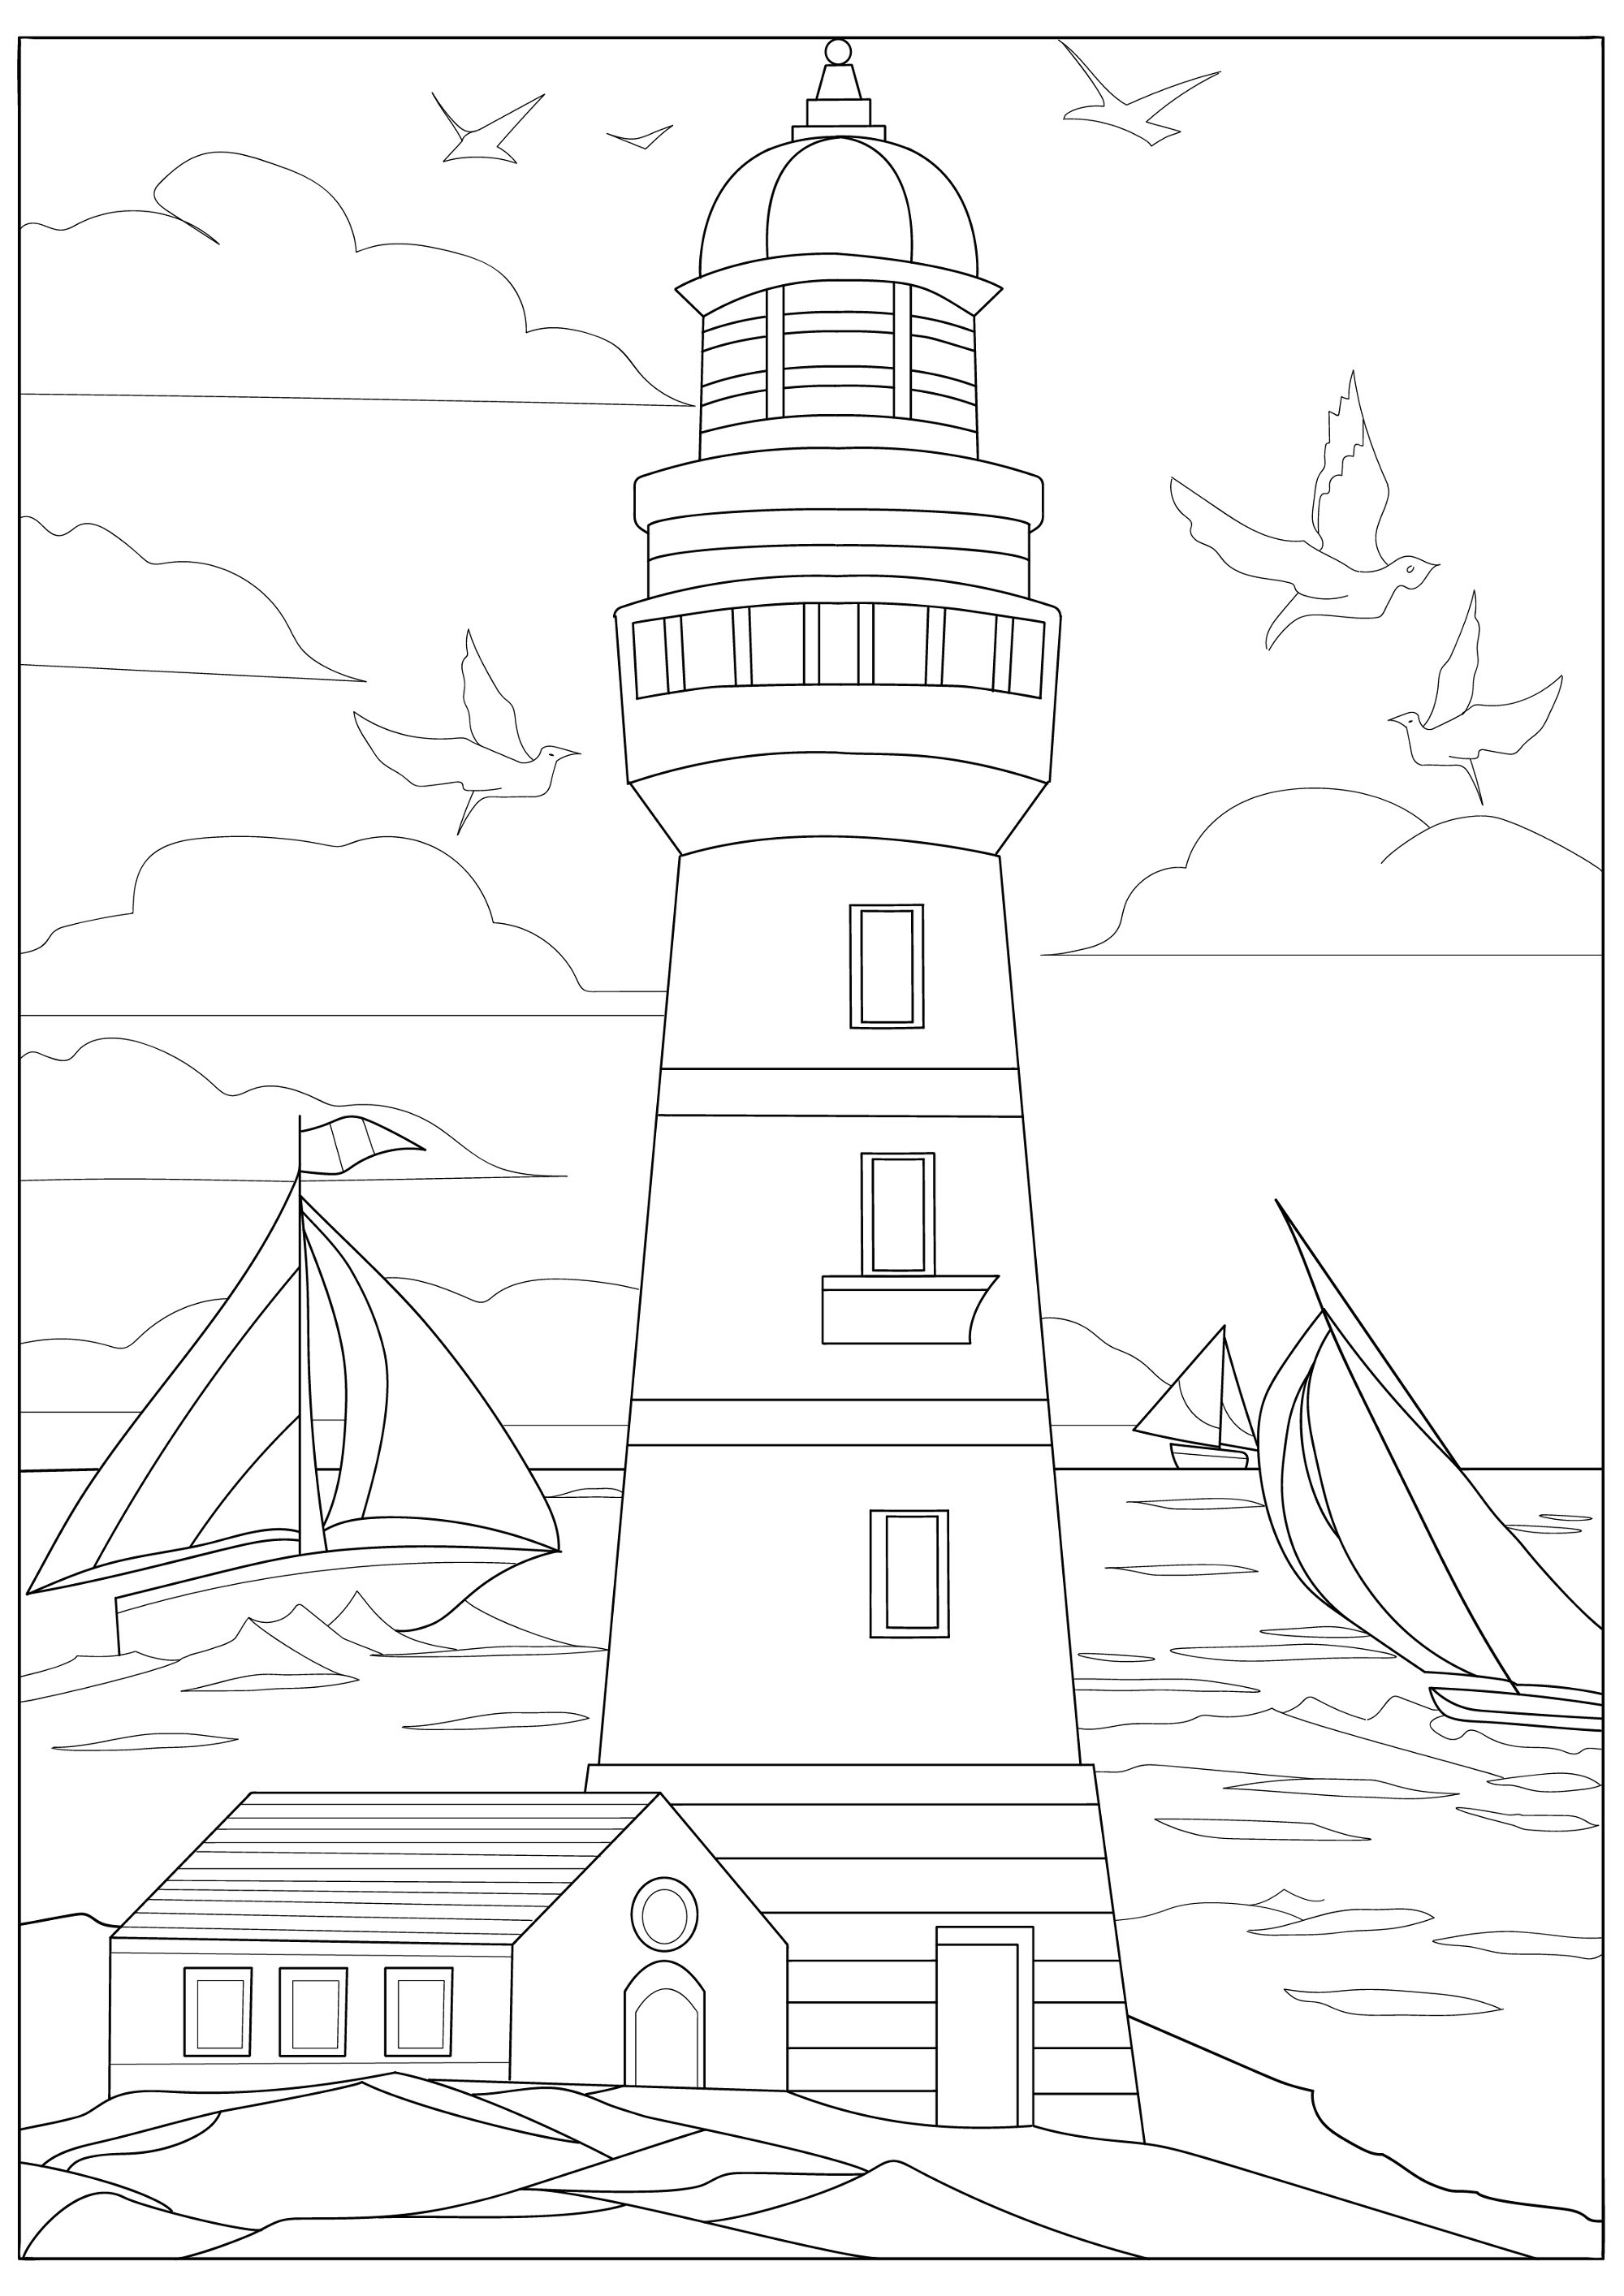 Joli phare breton à colorier, avec en arrière plan une mer calme et quelques bateaux